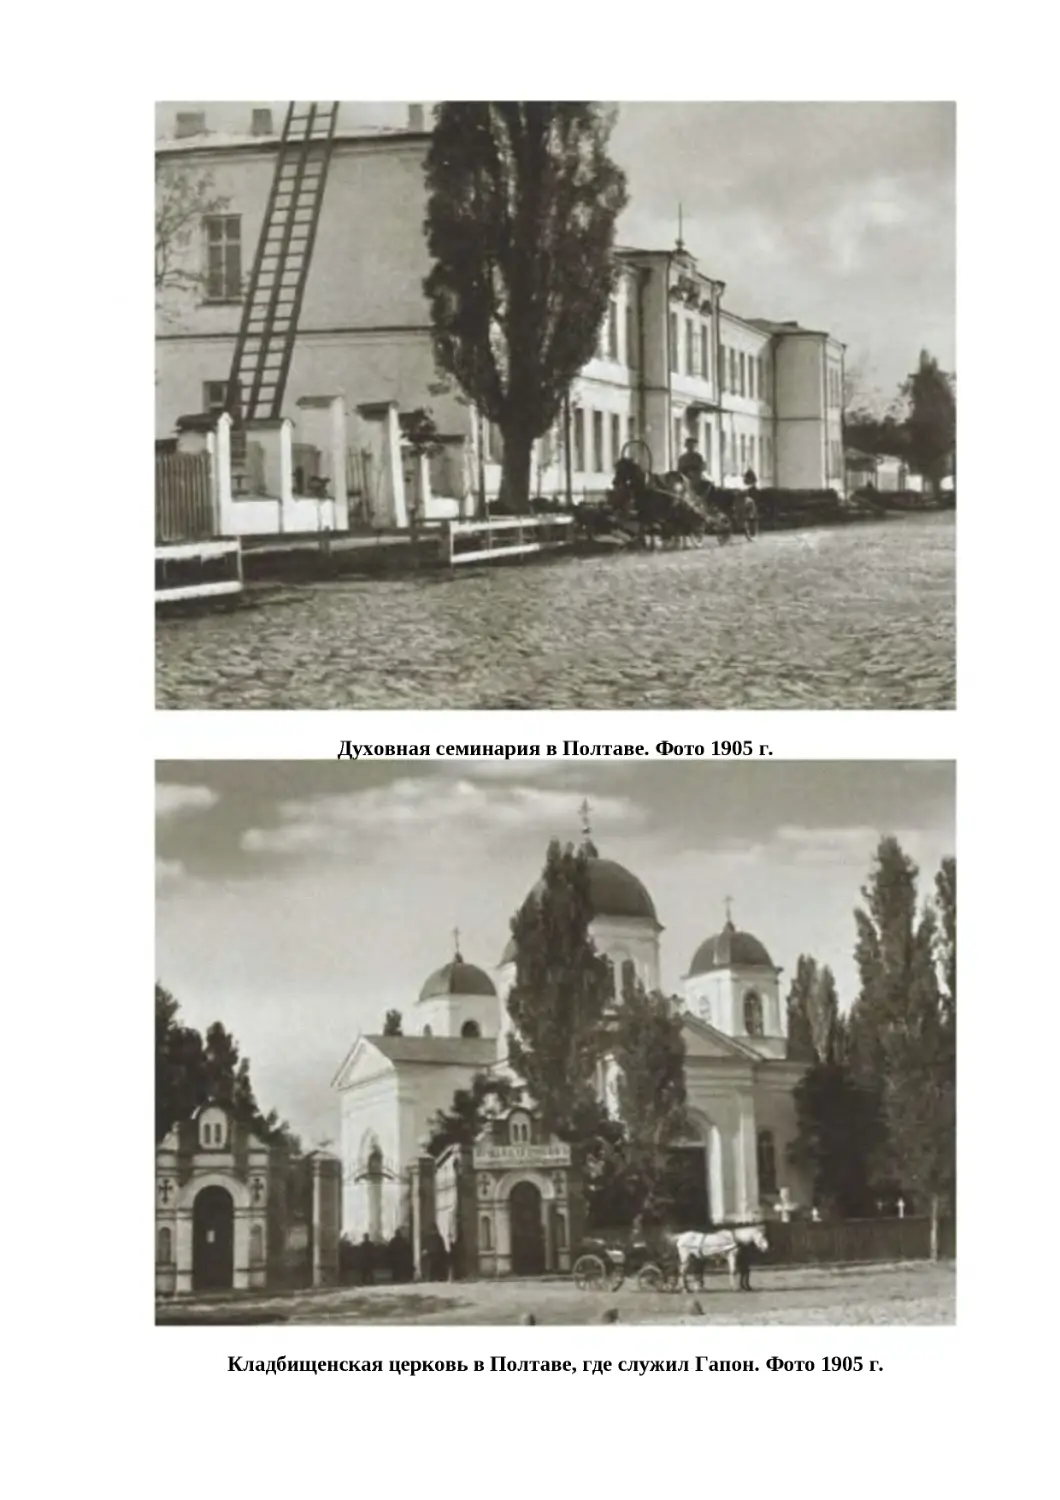 "
﻿Духовная семинария в Полтаве. Фото 1905 г
"
﻿Кладбищенская церковь в Полтаве, где служил Гапон. Фото 1905 г